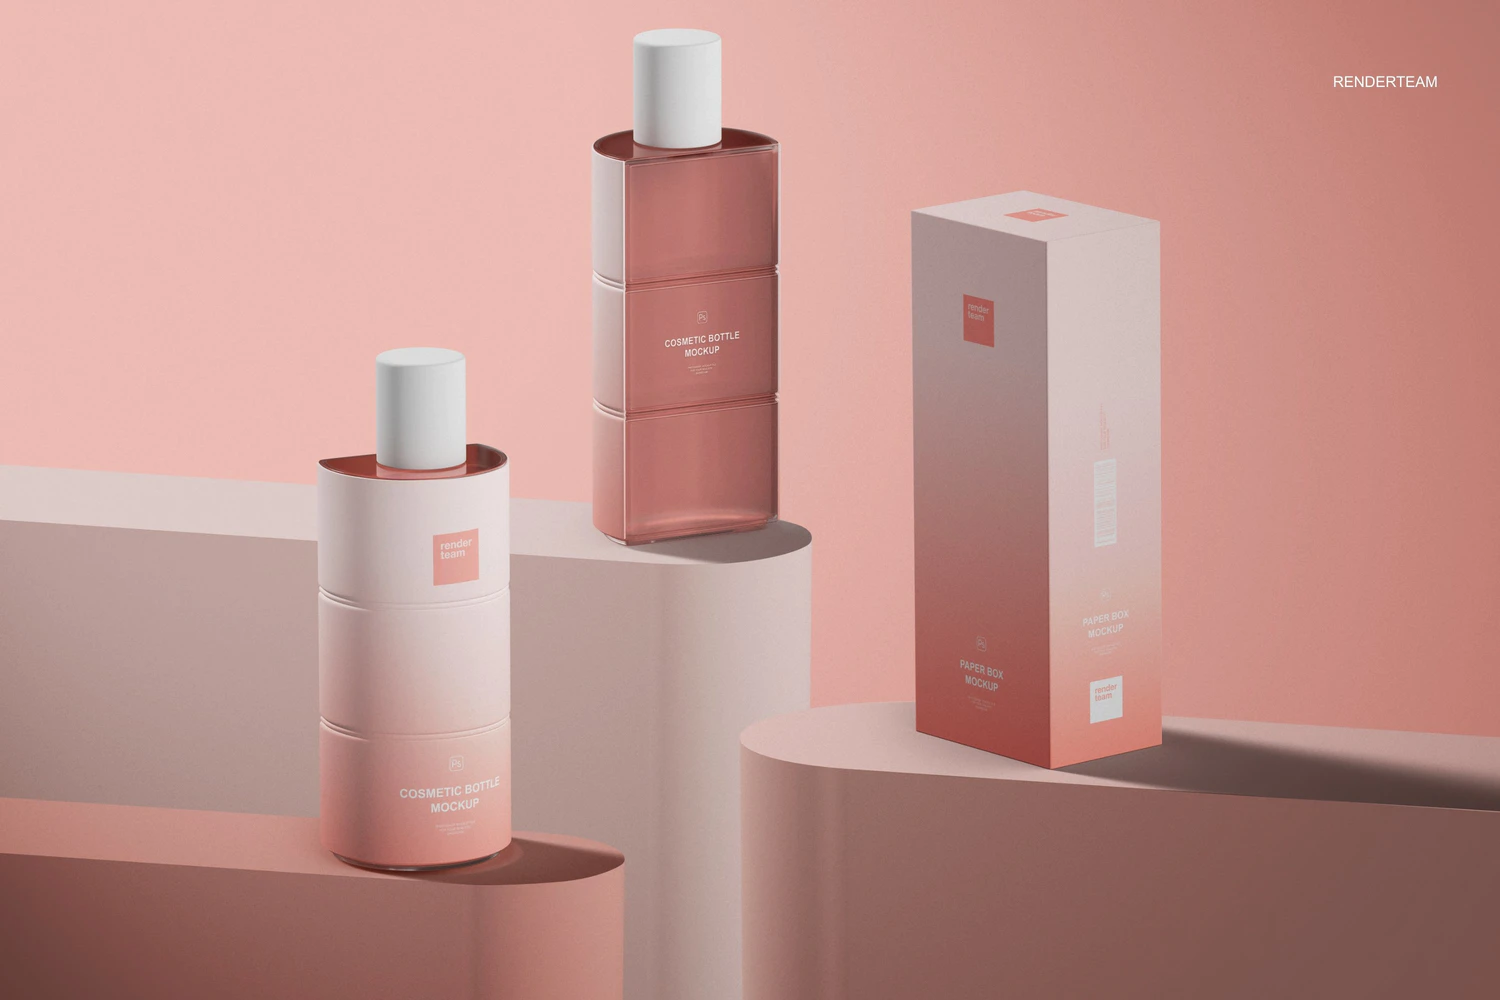 2073 化妆品瓶香水半瓶设计包装设计样机 (psd)Perfume Packaging Mockup